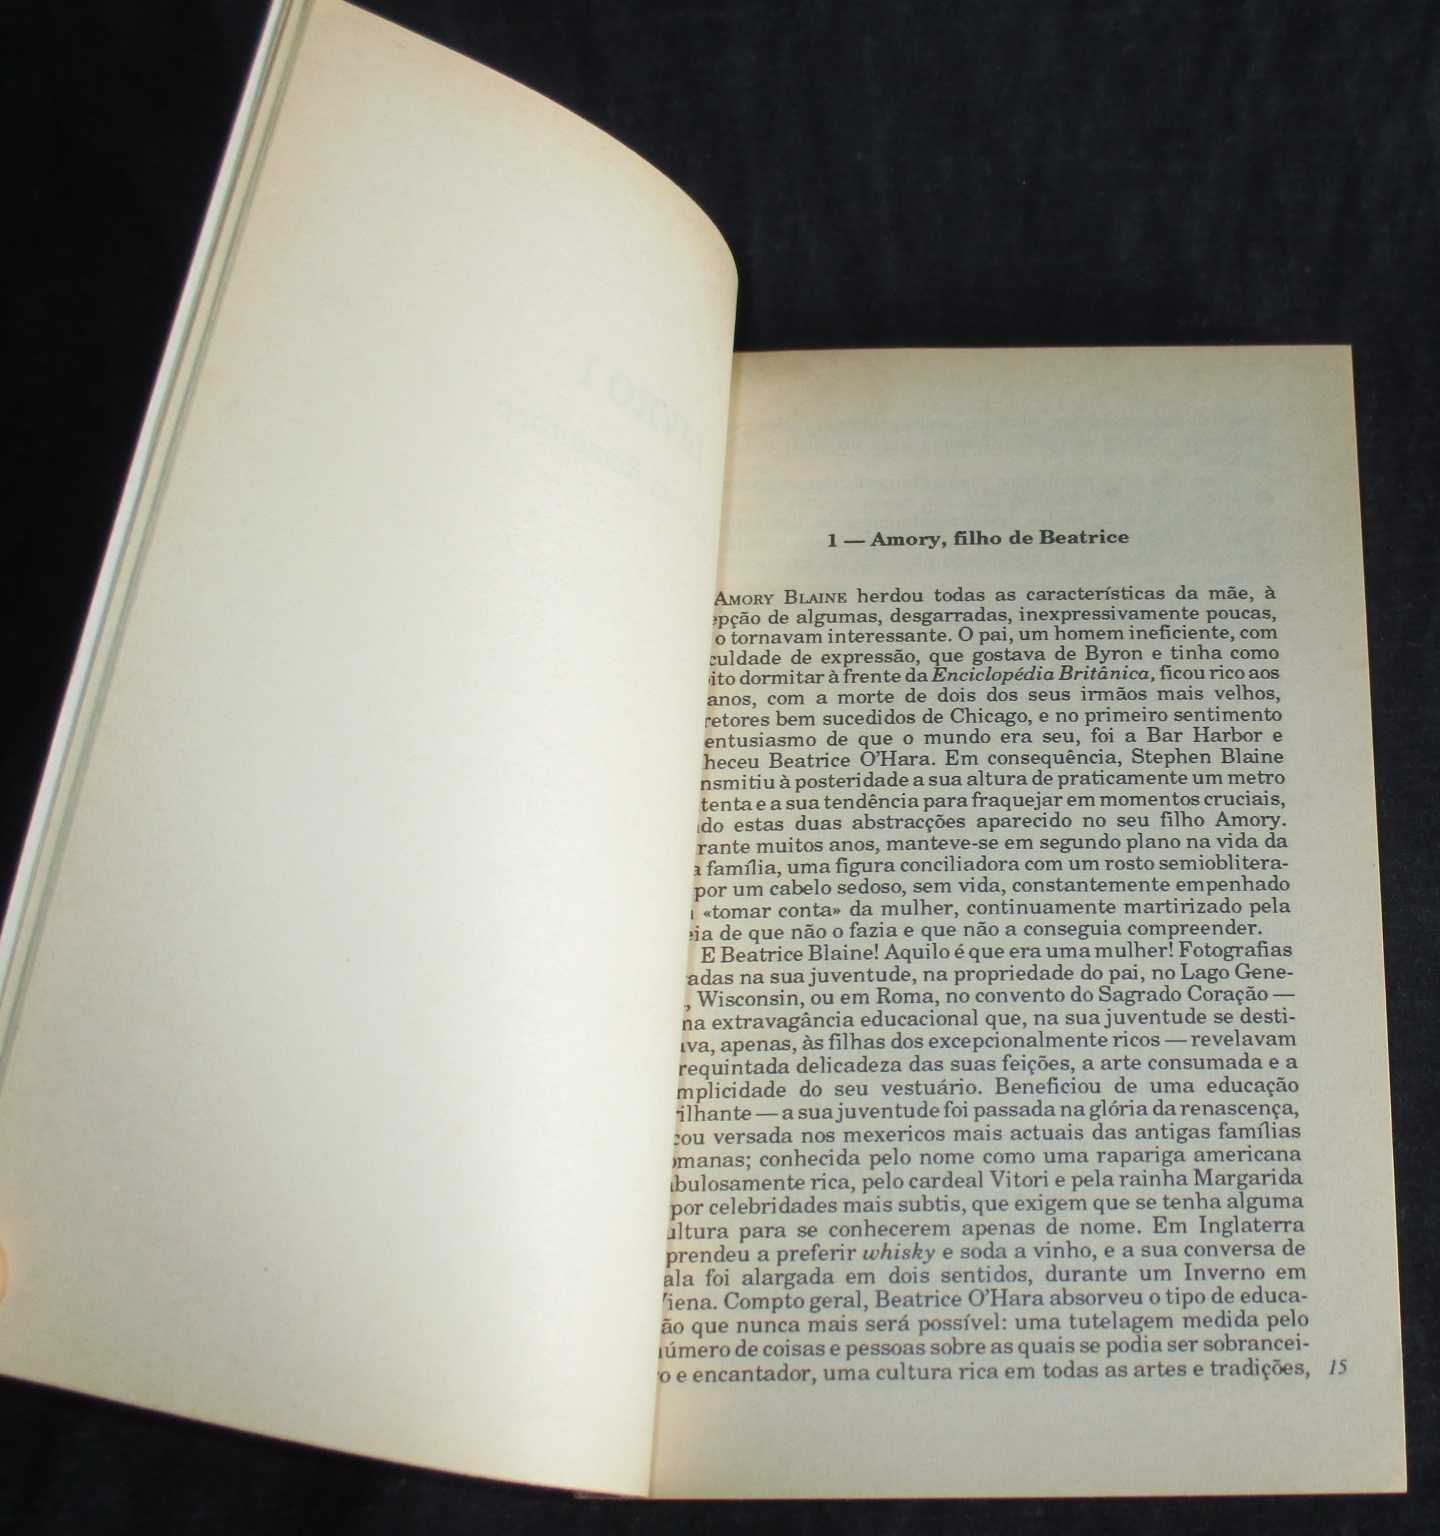 Livro Este Lado do Paraíso F. Scott Fitzgerald Grandes Obras